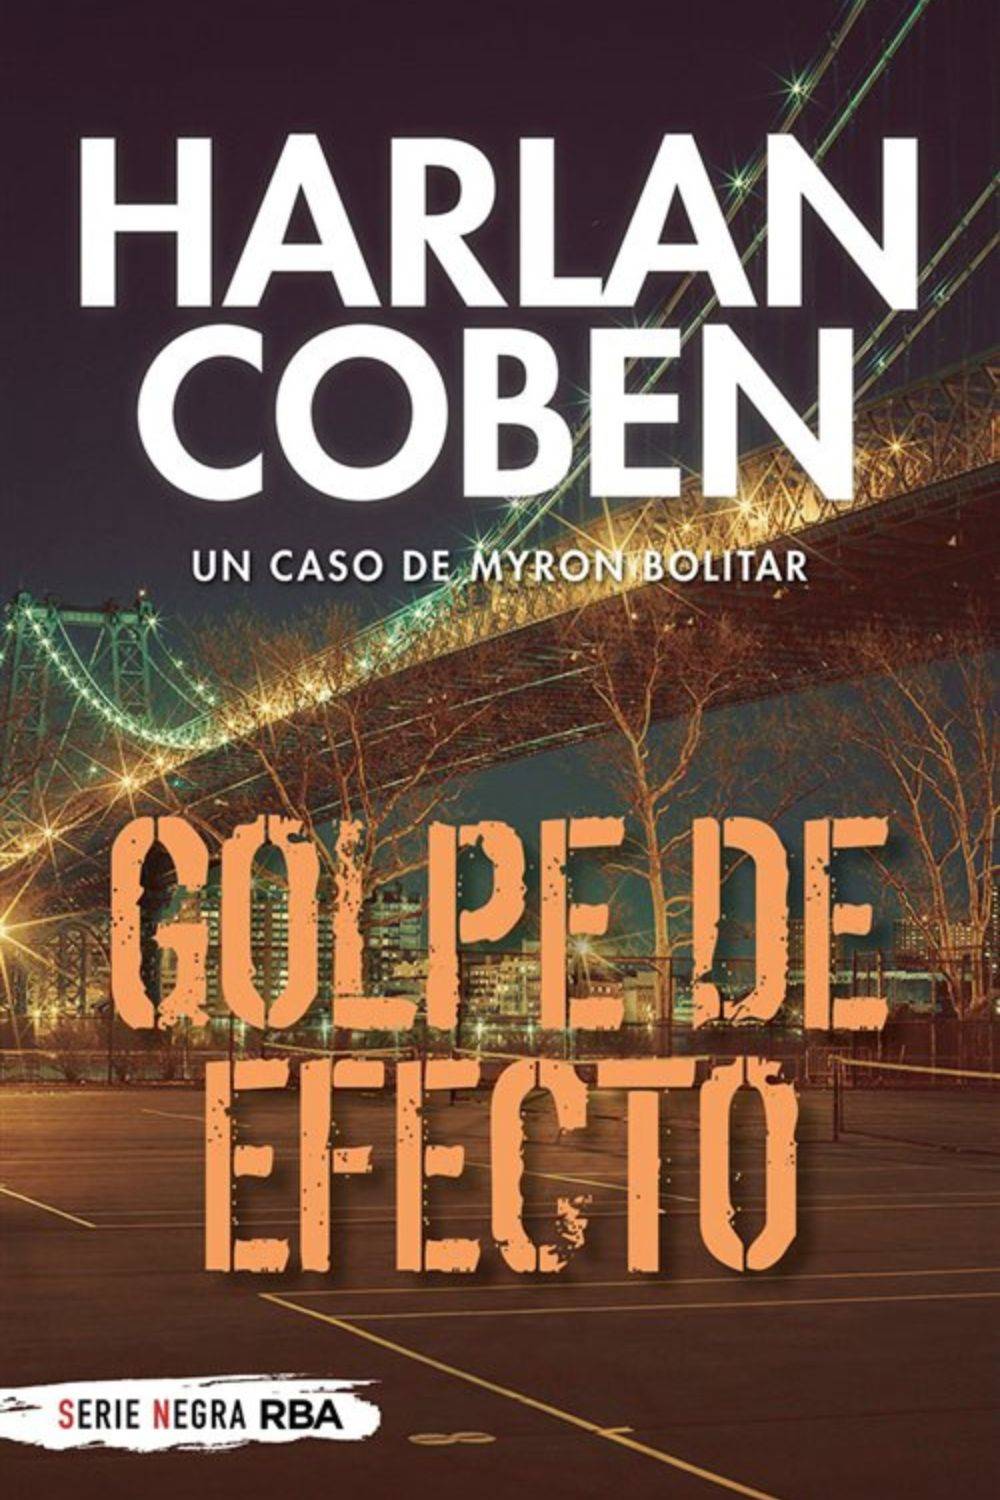 'Golpe de efecto' de Harlan Coben